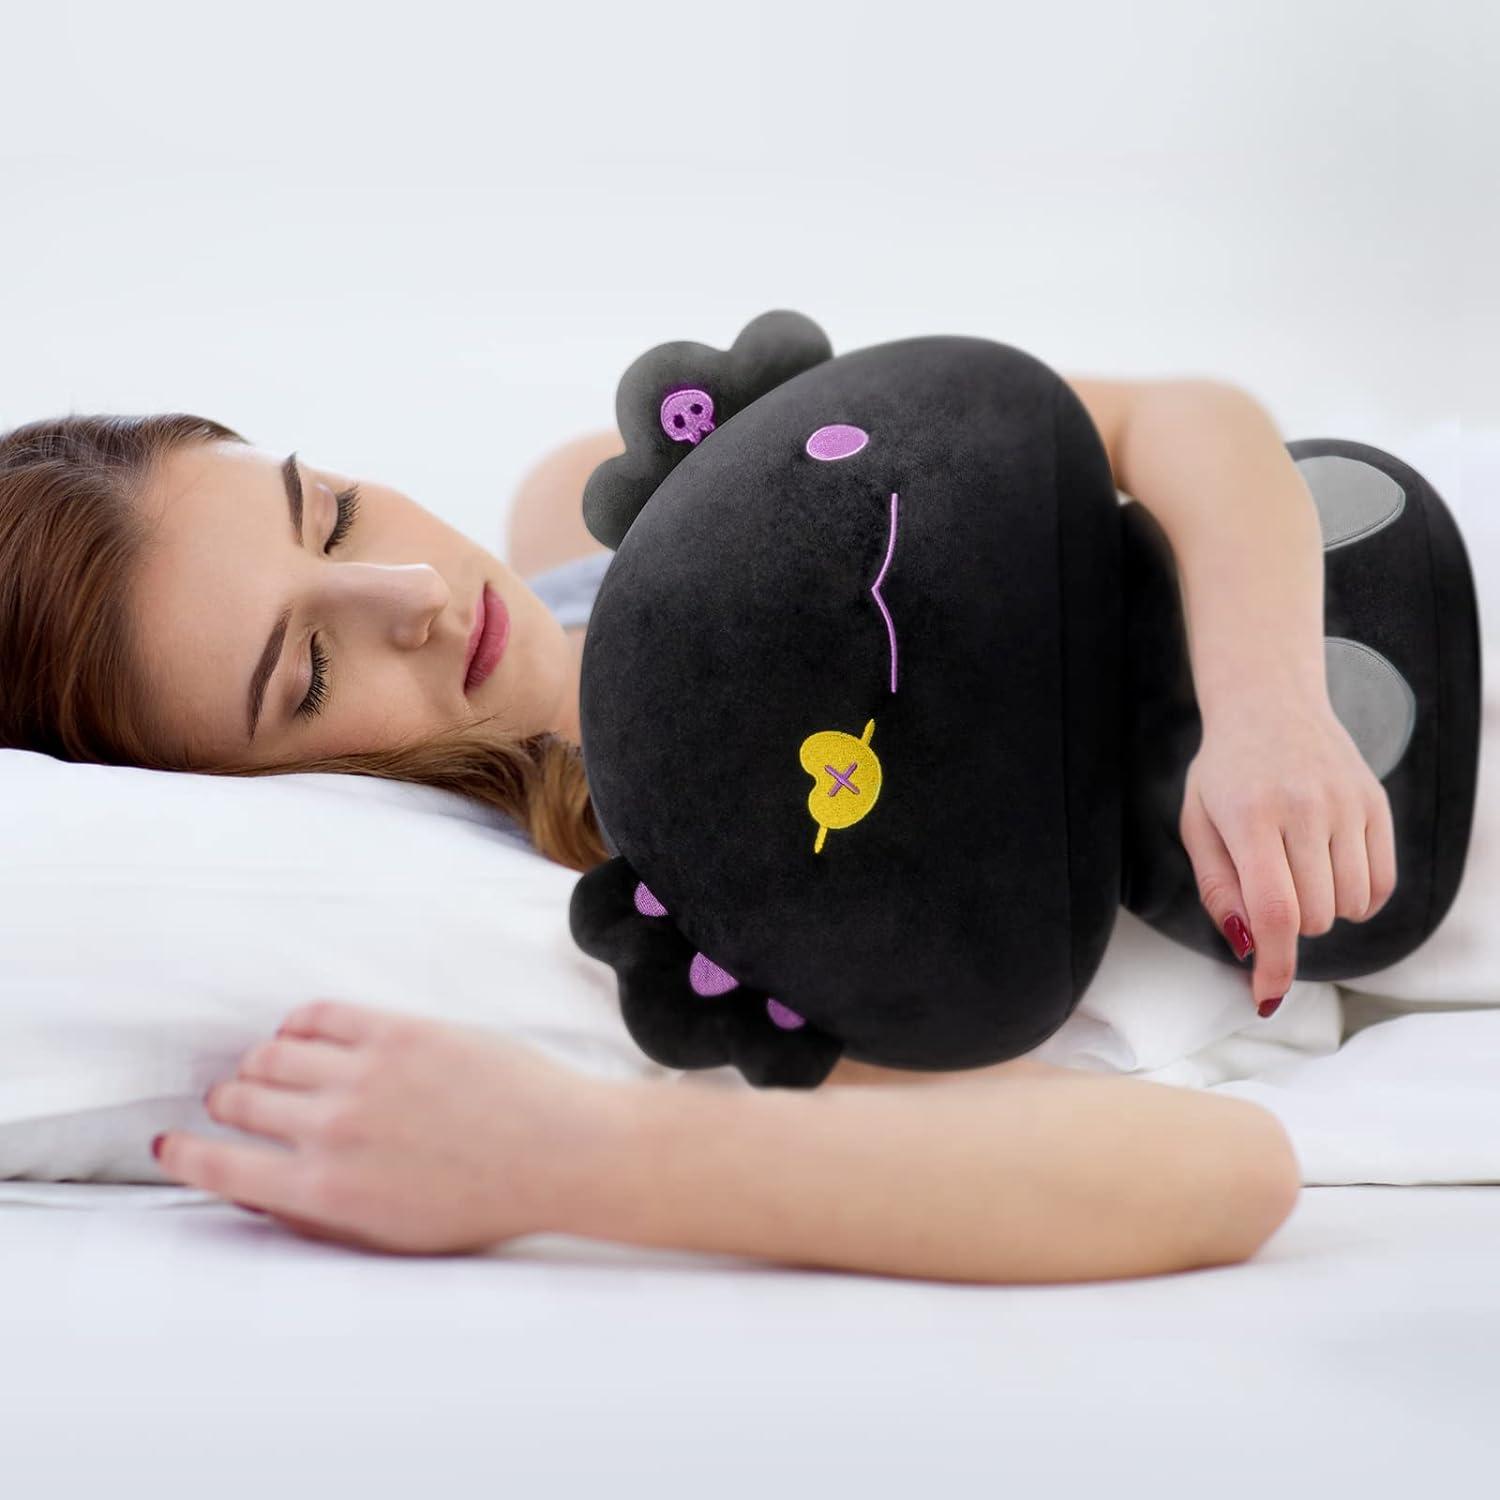  Mewaii 8” Mushroom Plush, Cute Black Cat Plush Pillow